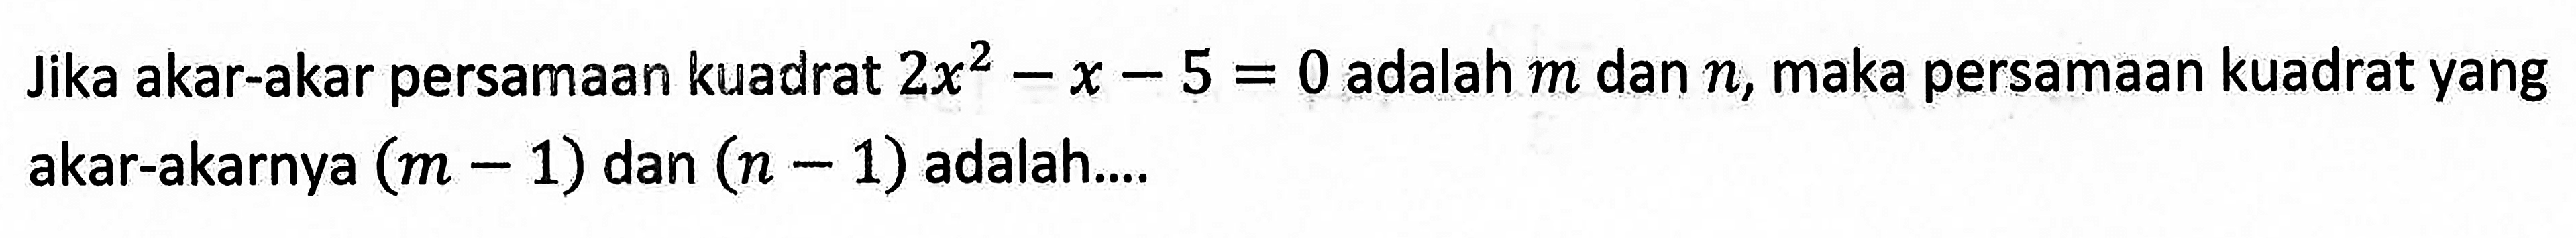 Jika akar-akar persamaan kuadrat 2x^2-x-5=0 adalah m dan n, maka persamaan kuadrat yang akar-akarnya (m-1) dan (n-1) adalah....